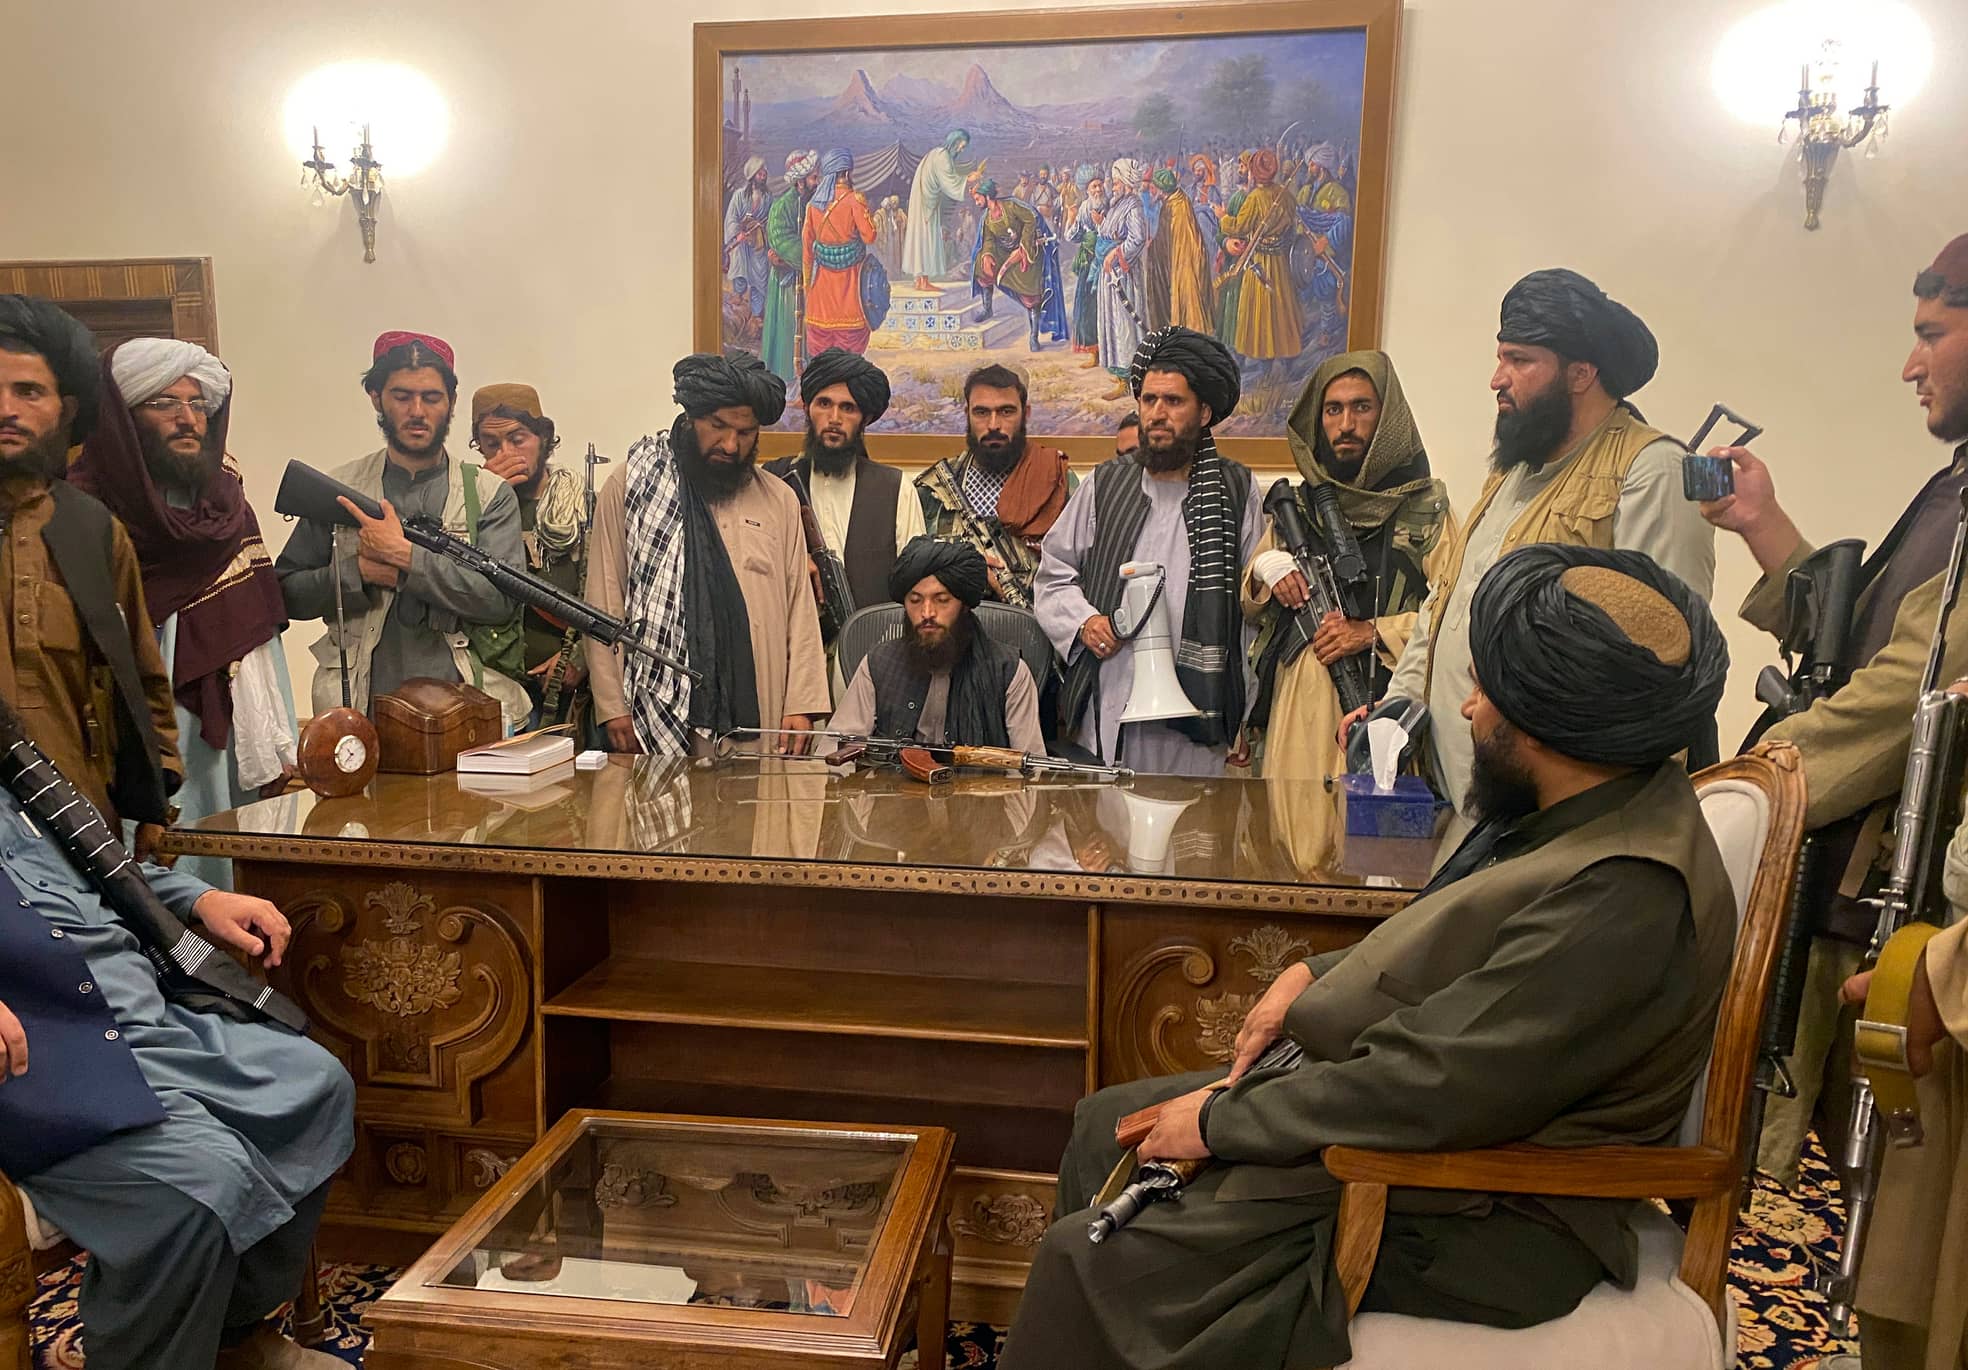 Ein Bild, das um die Welt ging: Die Taliban im Präsidentenpalast.